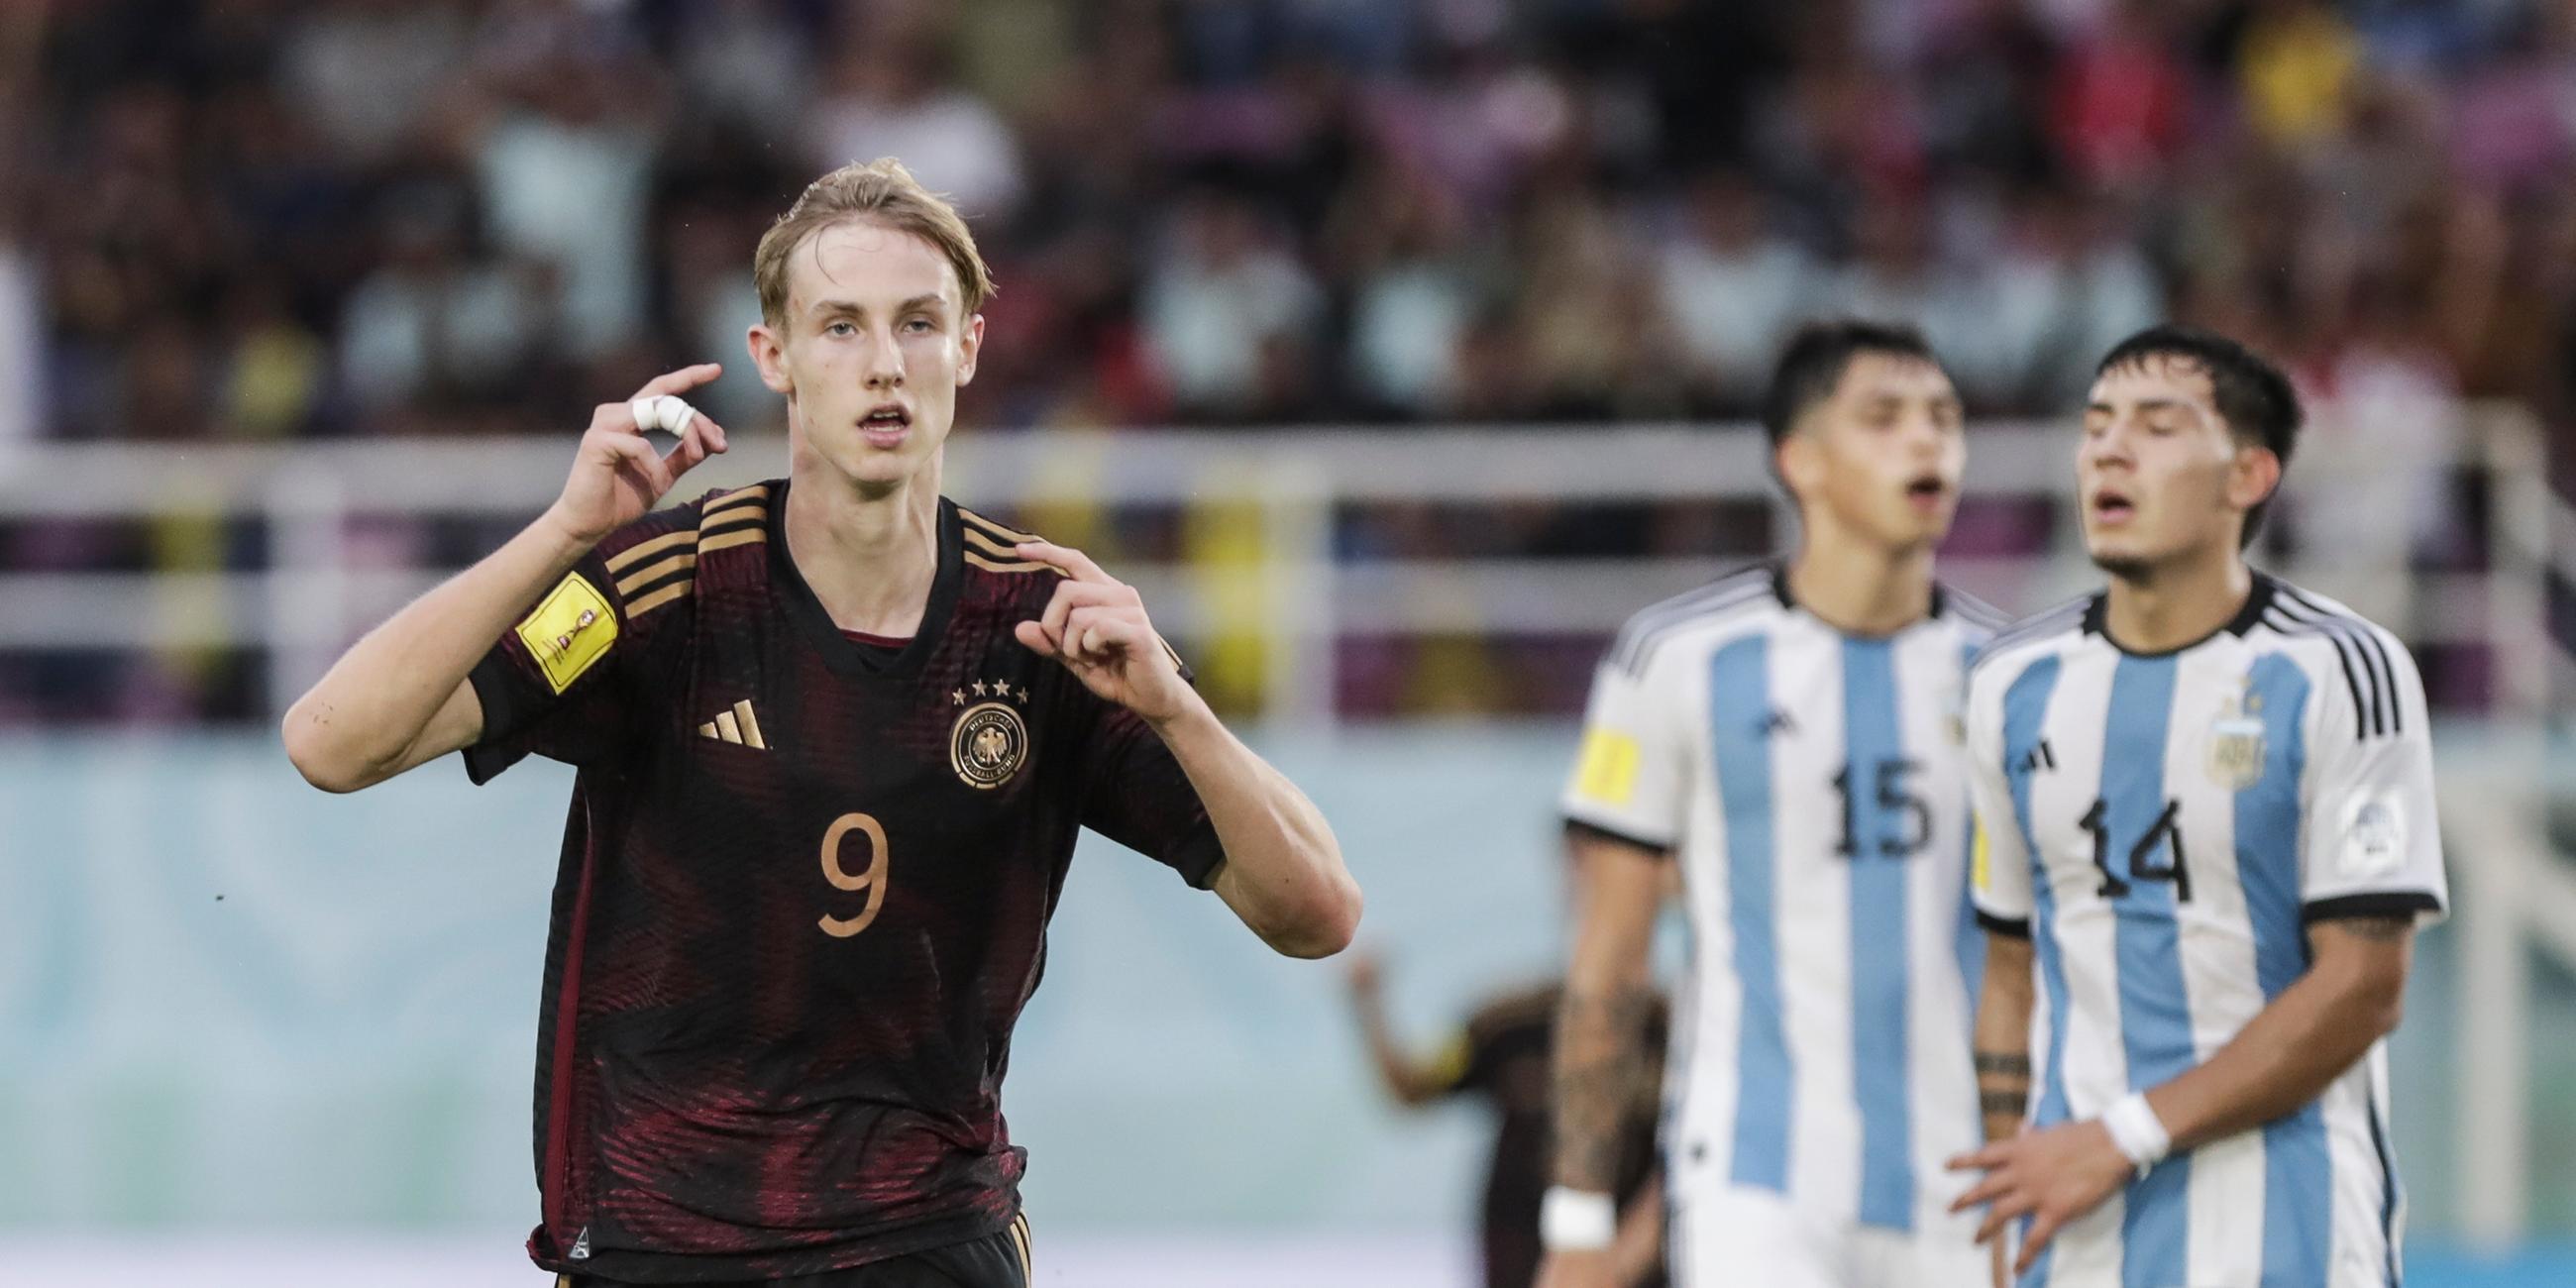 Max Moerstedt bejubelt im Halbfinale der U17-WM gegen Argentinien sein Tor zum 3:2.